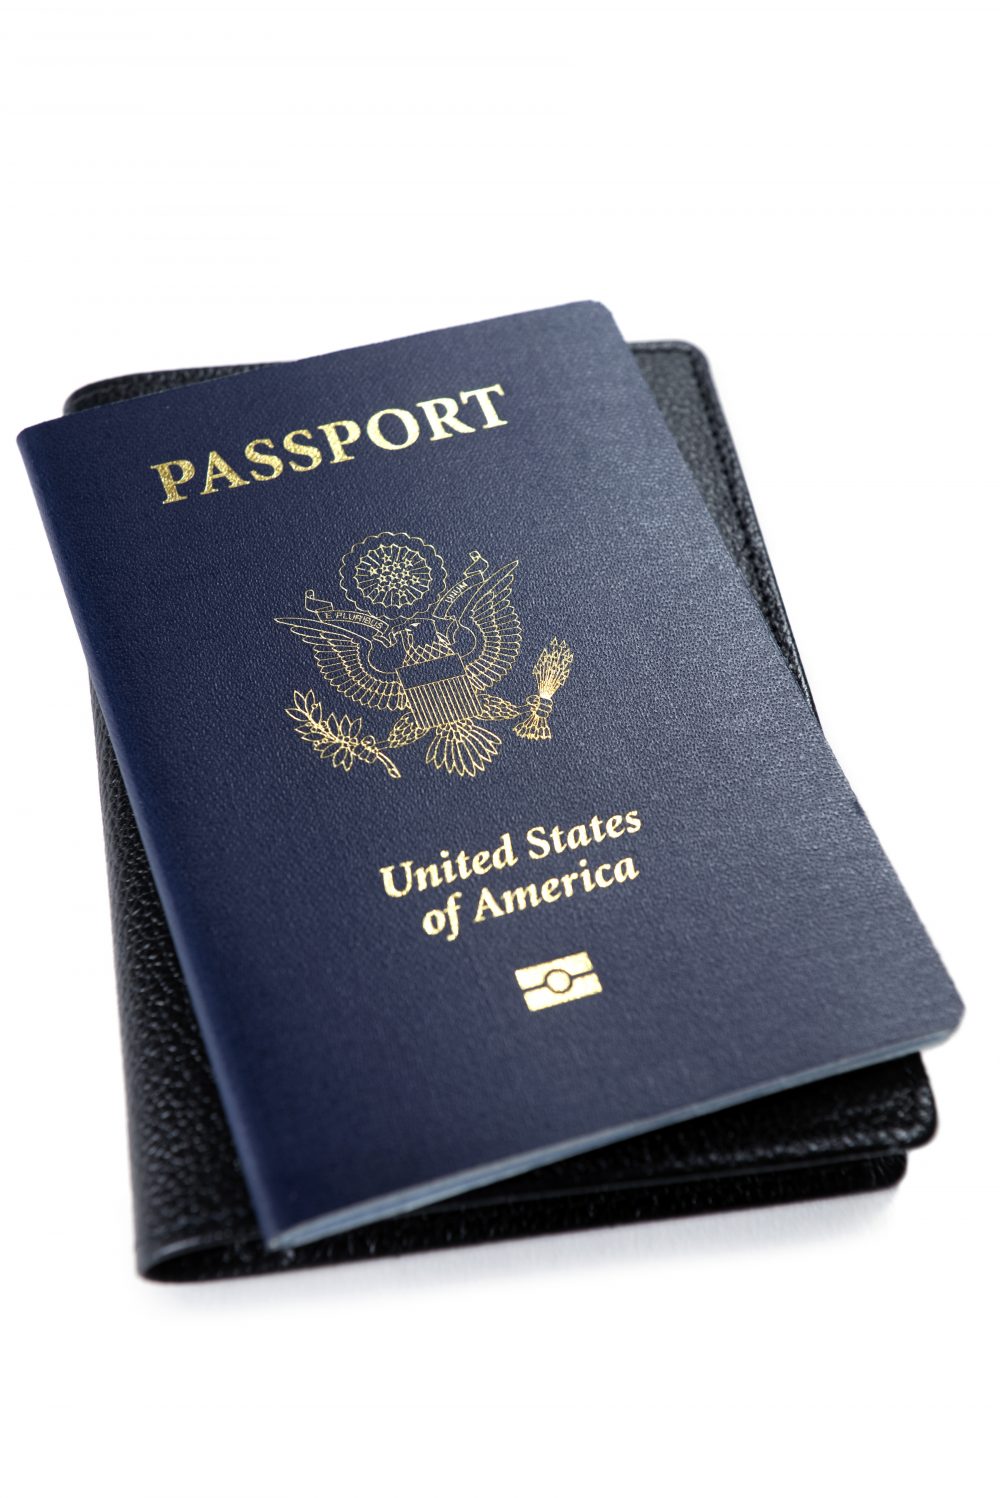 חידוש דרכון אמריקאי שפג תוקפו